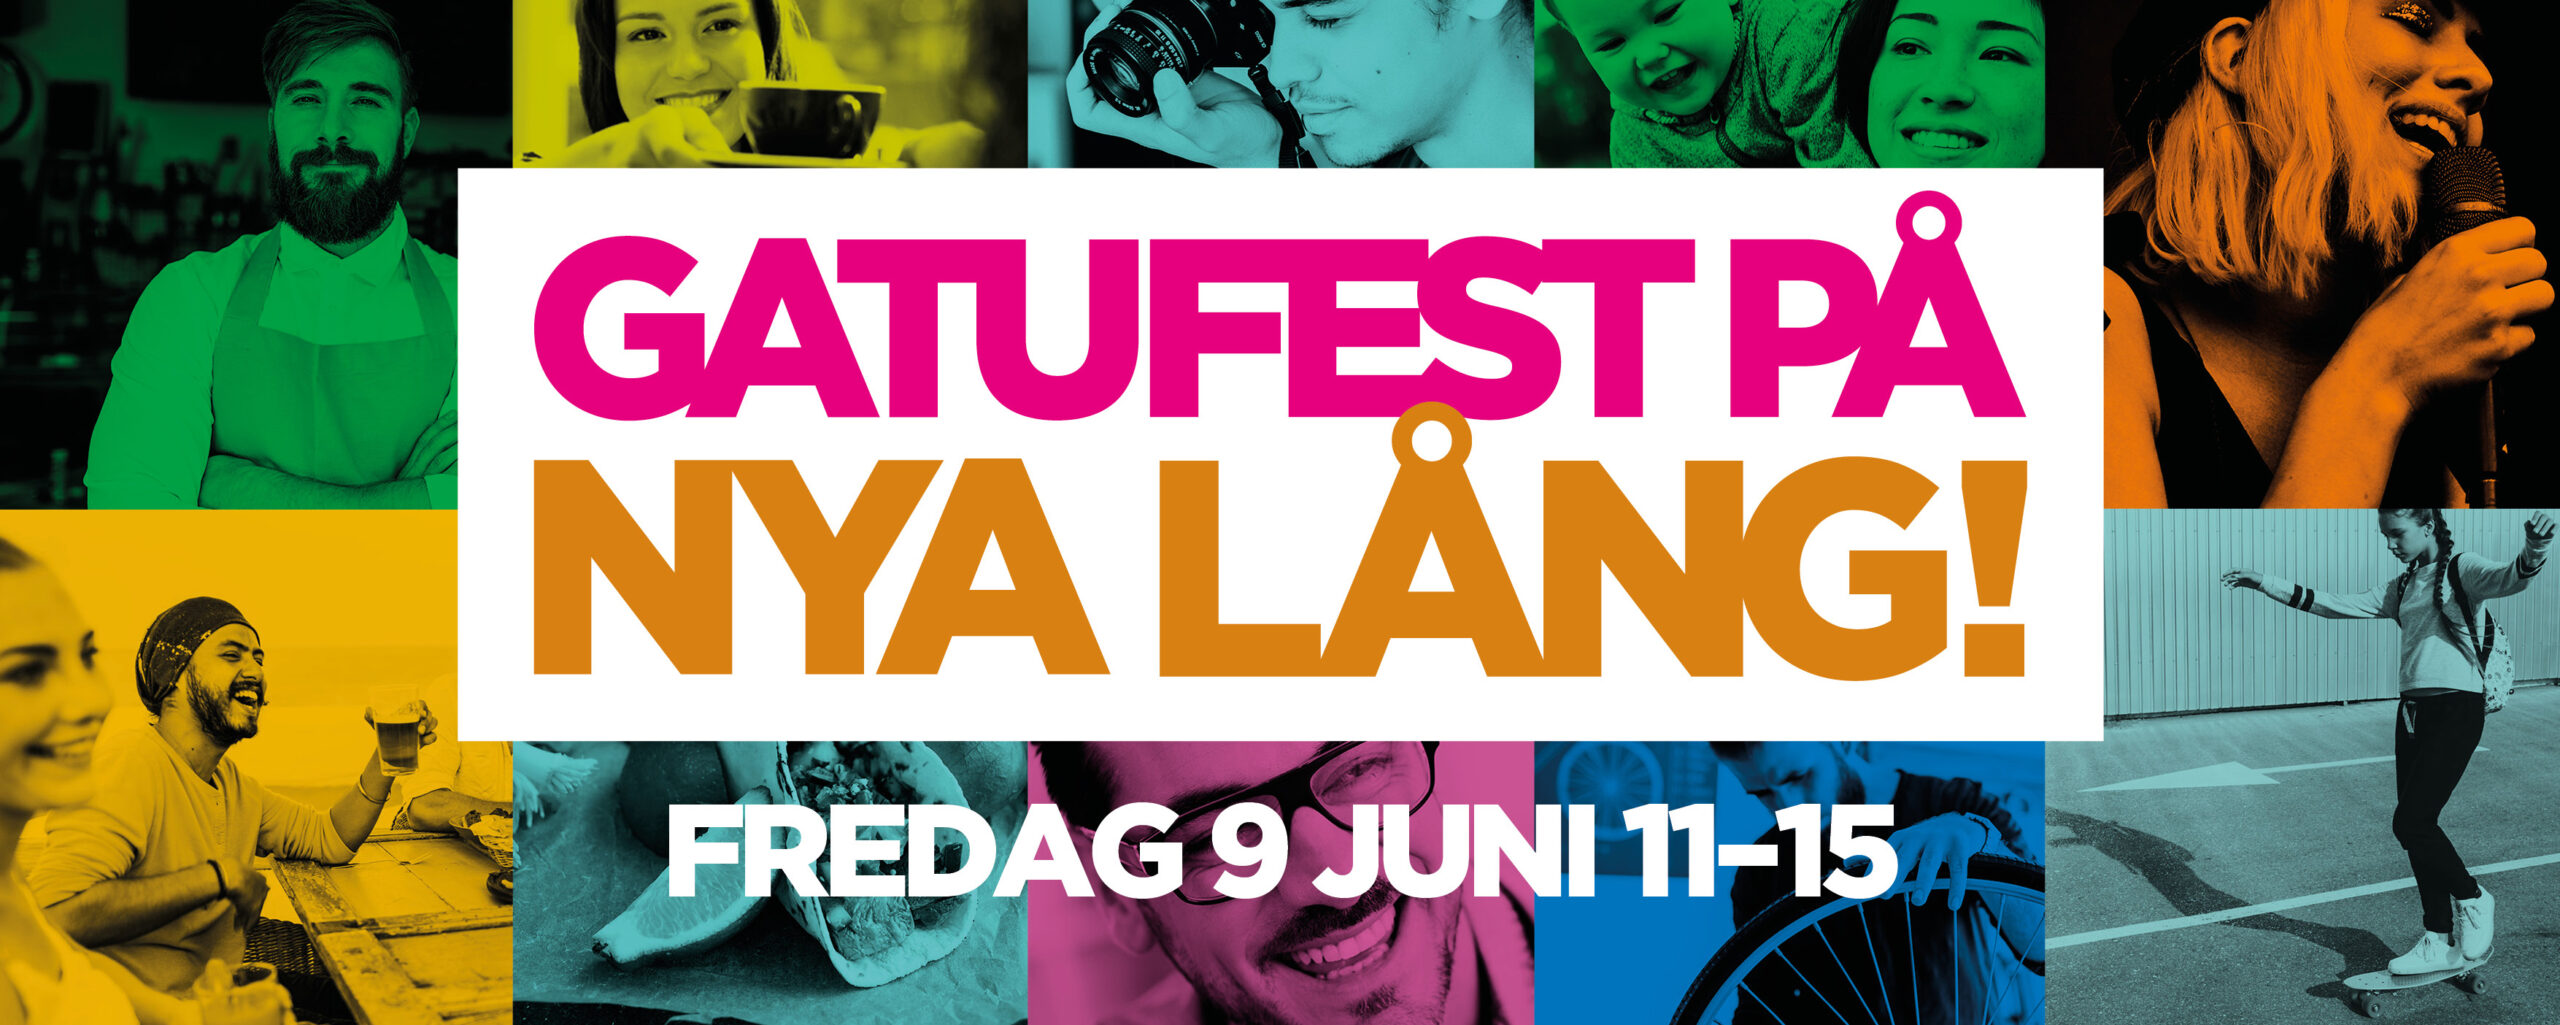 Text: Gatufest på Nya Lång! Fredag 9 juni 11-15.